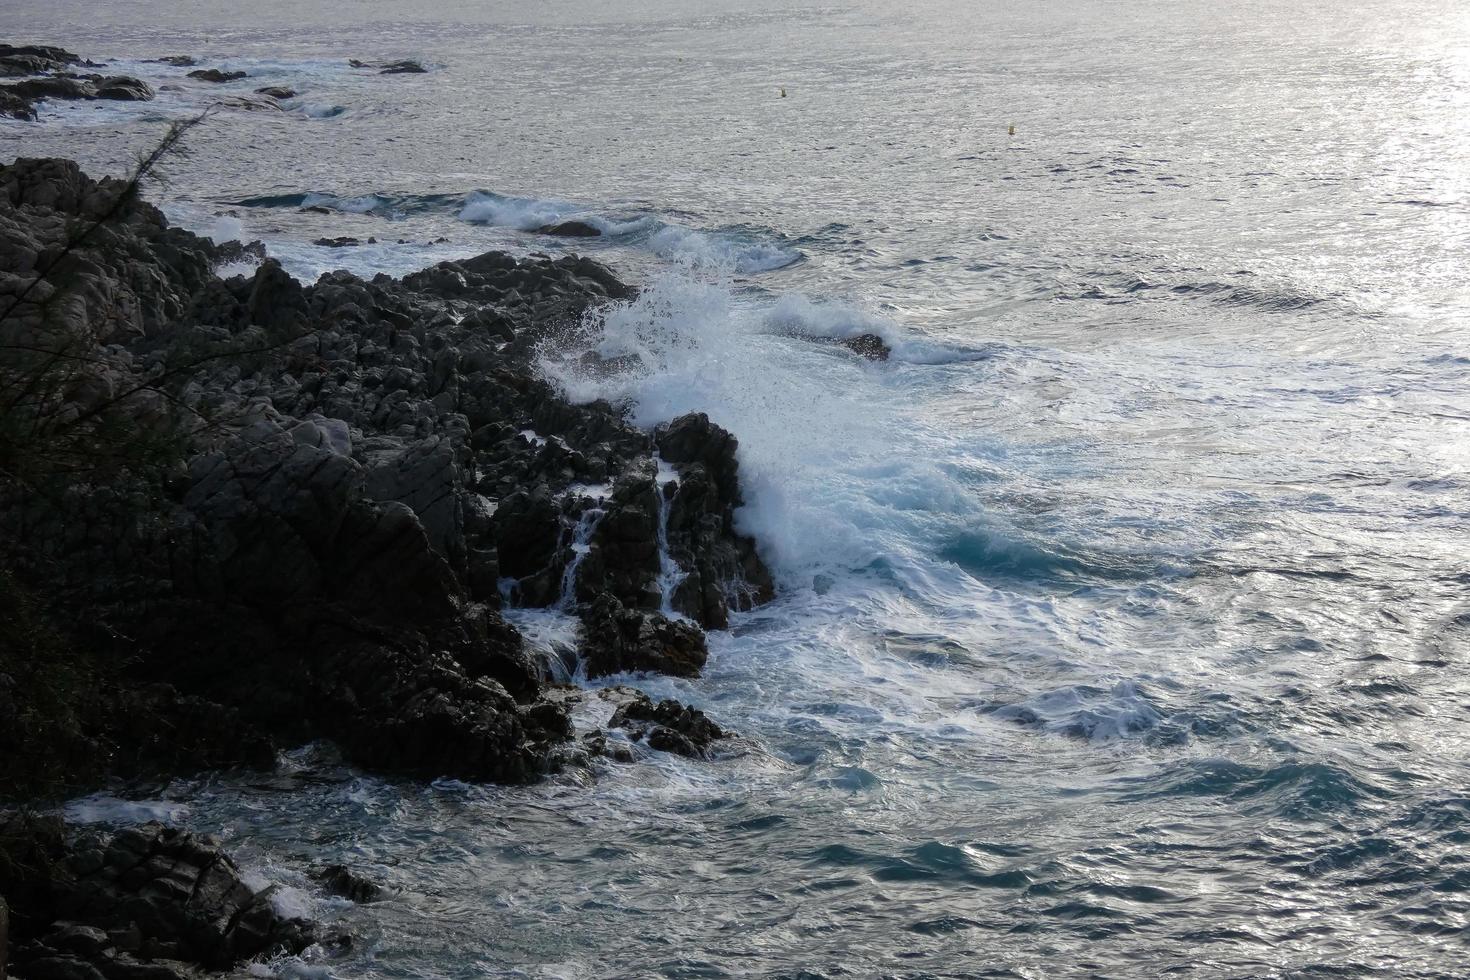 costa mediterránea con rocas en la región catalana, españa foto